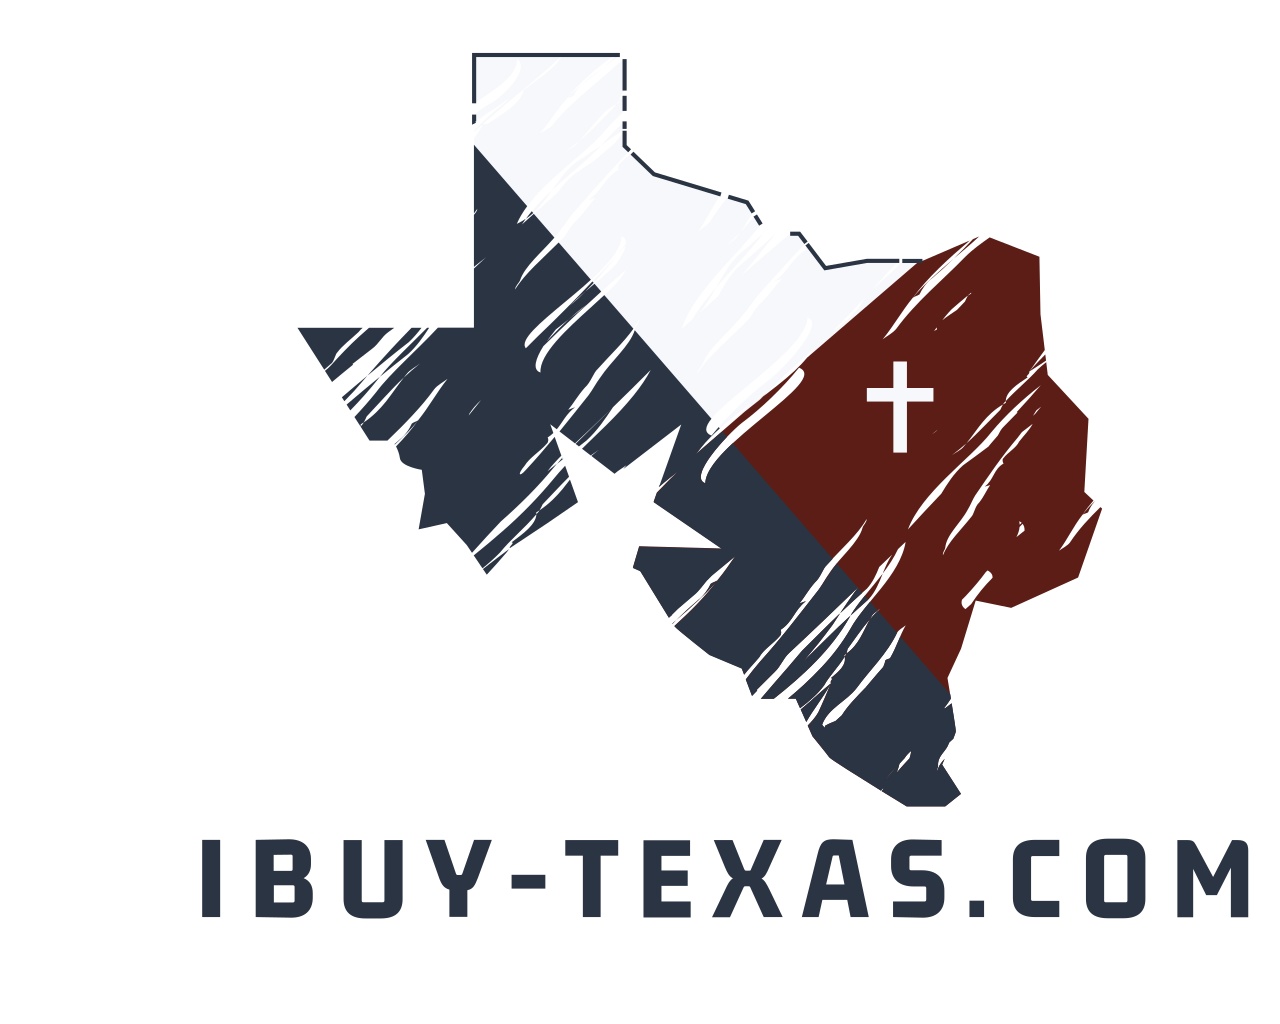 IBUY-TEXAS.com logo